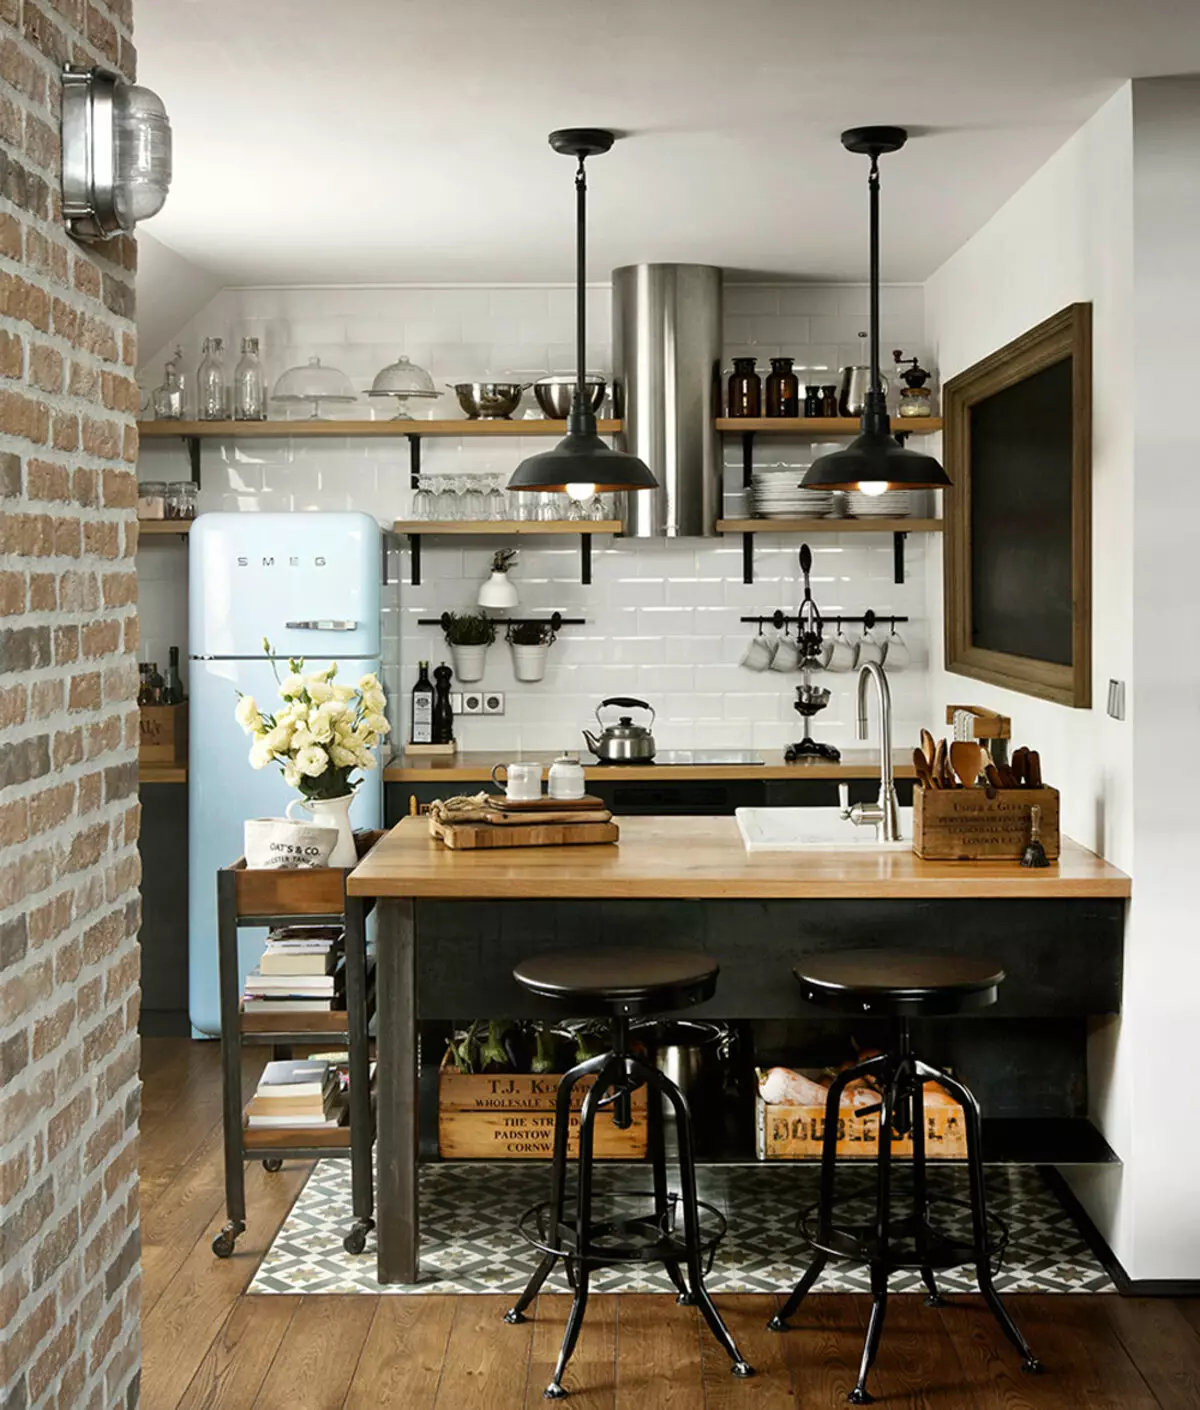 طراحی آشپزخانه 5 مربع. متر (100 عکس): تعمیر در آشپزخانه 5 متر مربع، مجموعه آشپزخانه و دیگر مبلمان، ایده های برنامه ریزی برای آشپزخانه کوچک 9454_27